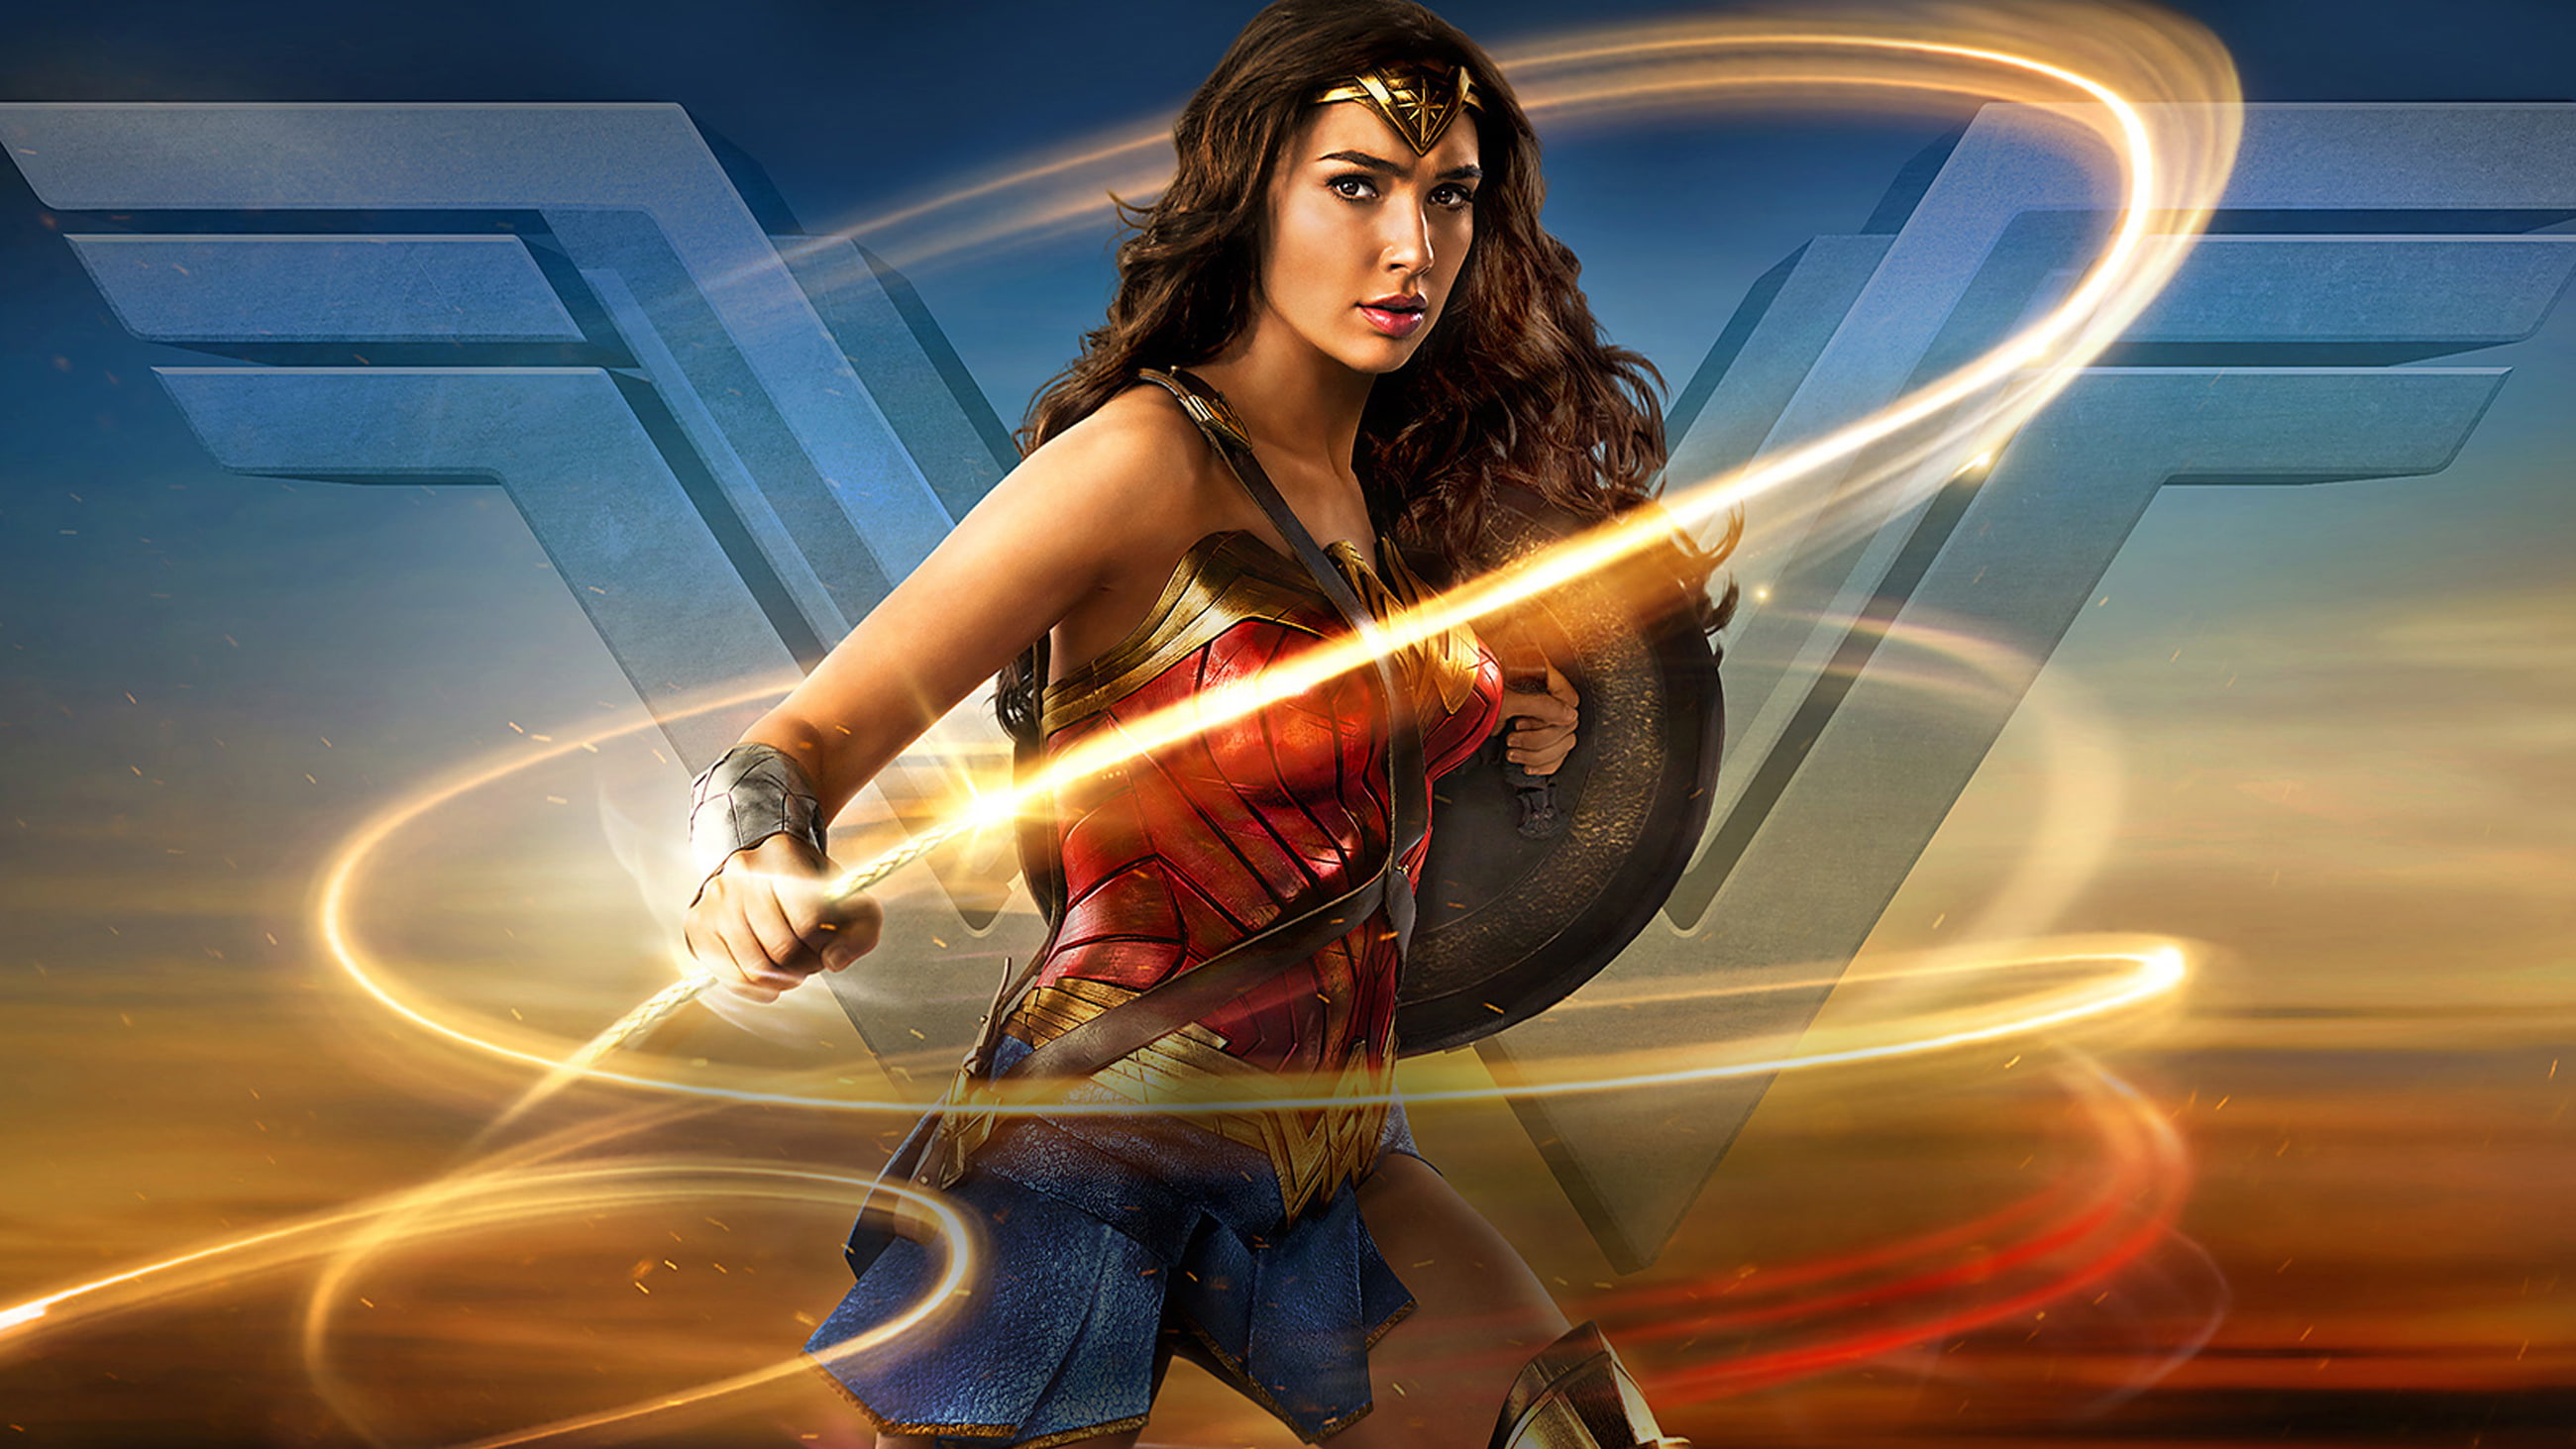 Gal Gadot as Wonderwoman, Wonder Woman, HD